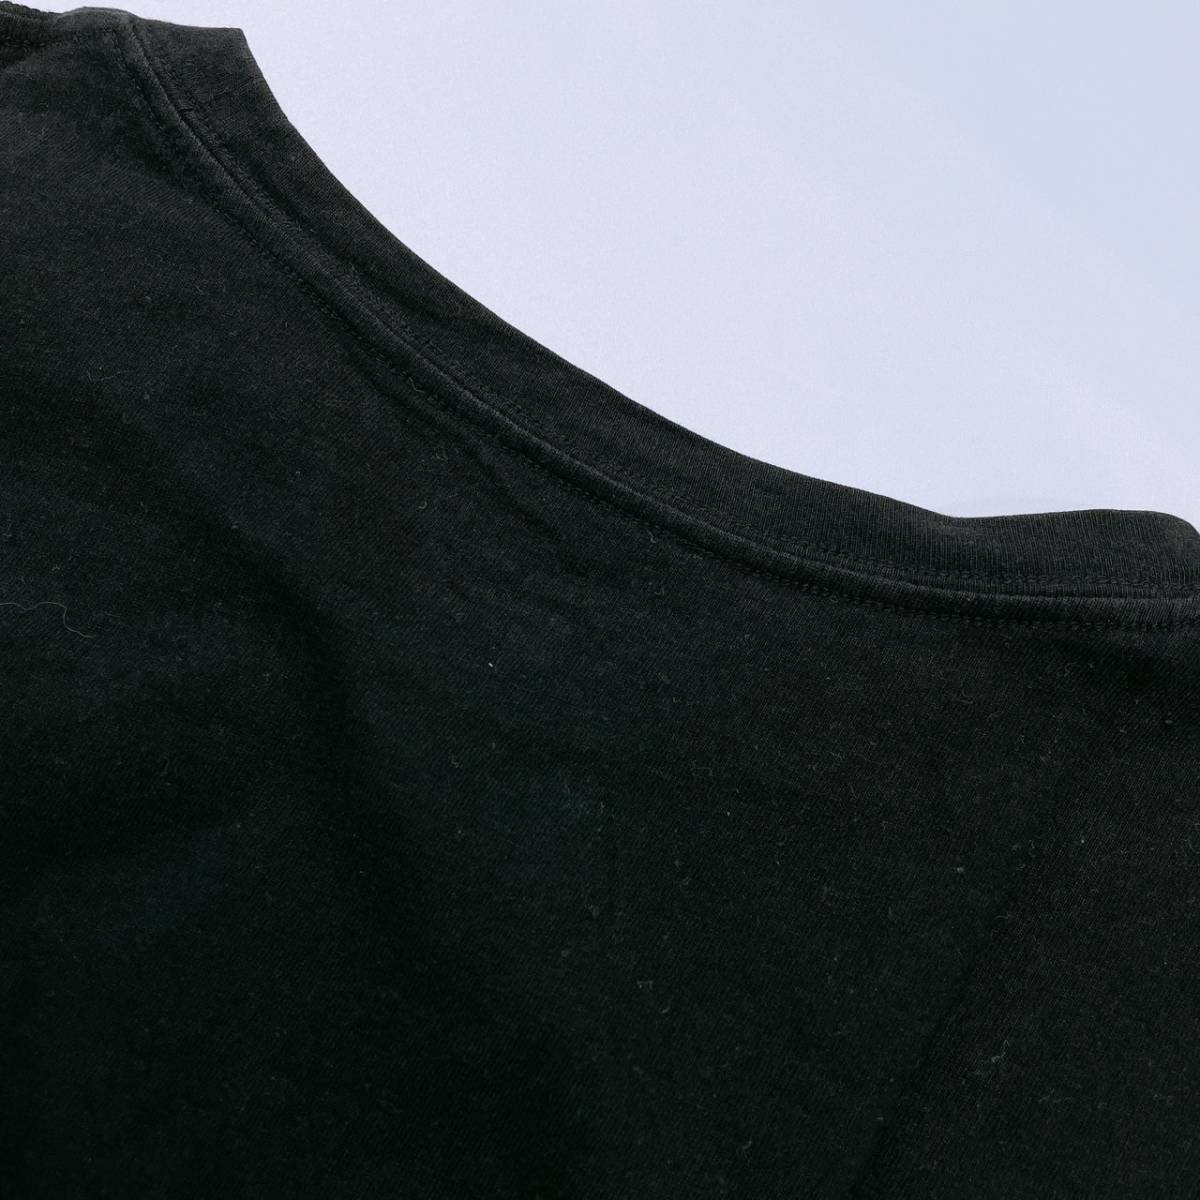 レディースS COLOR TEE GU トップス シャツ 半袖シャツ Tシャツ ブラック 黒 無地 丸ネック インナー デイリーウェア ジーユー 【20973】